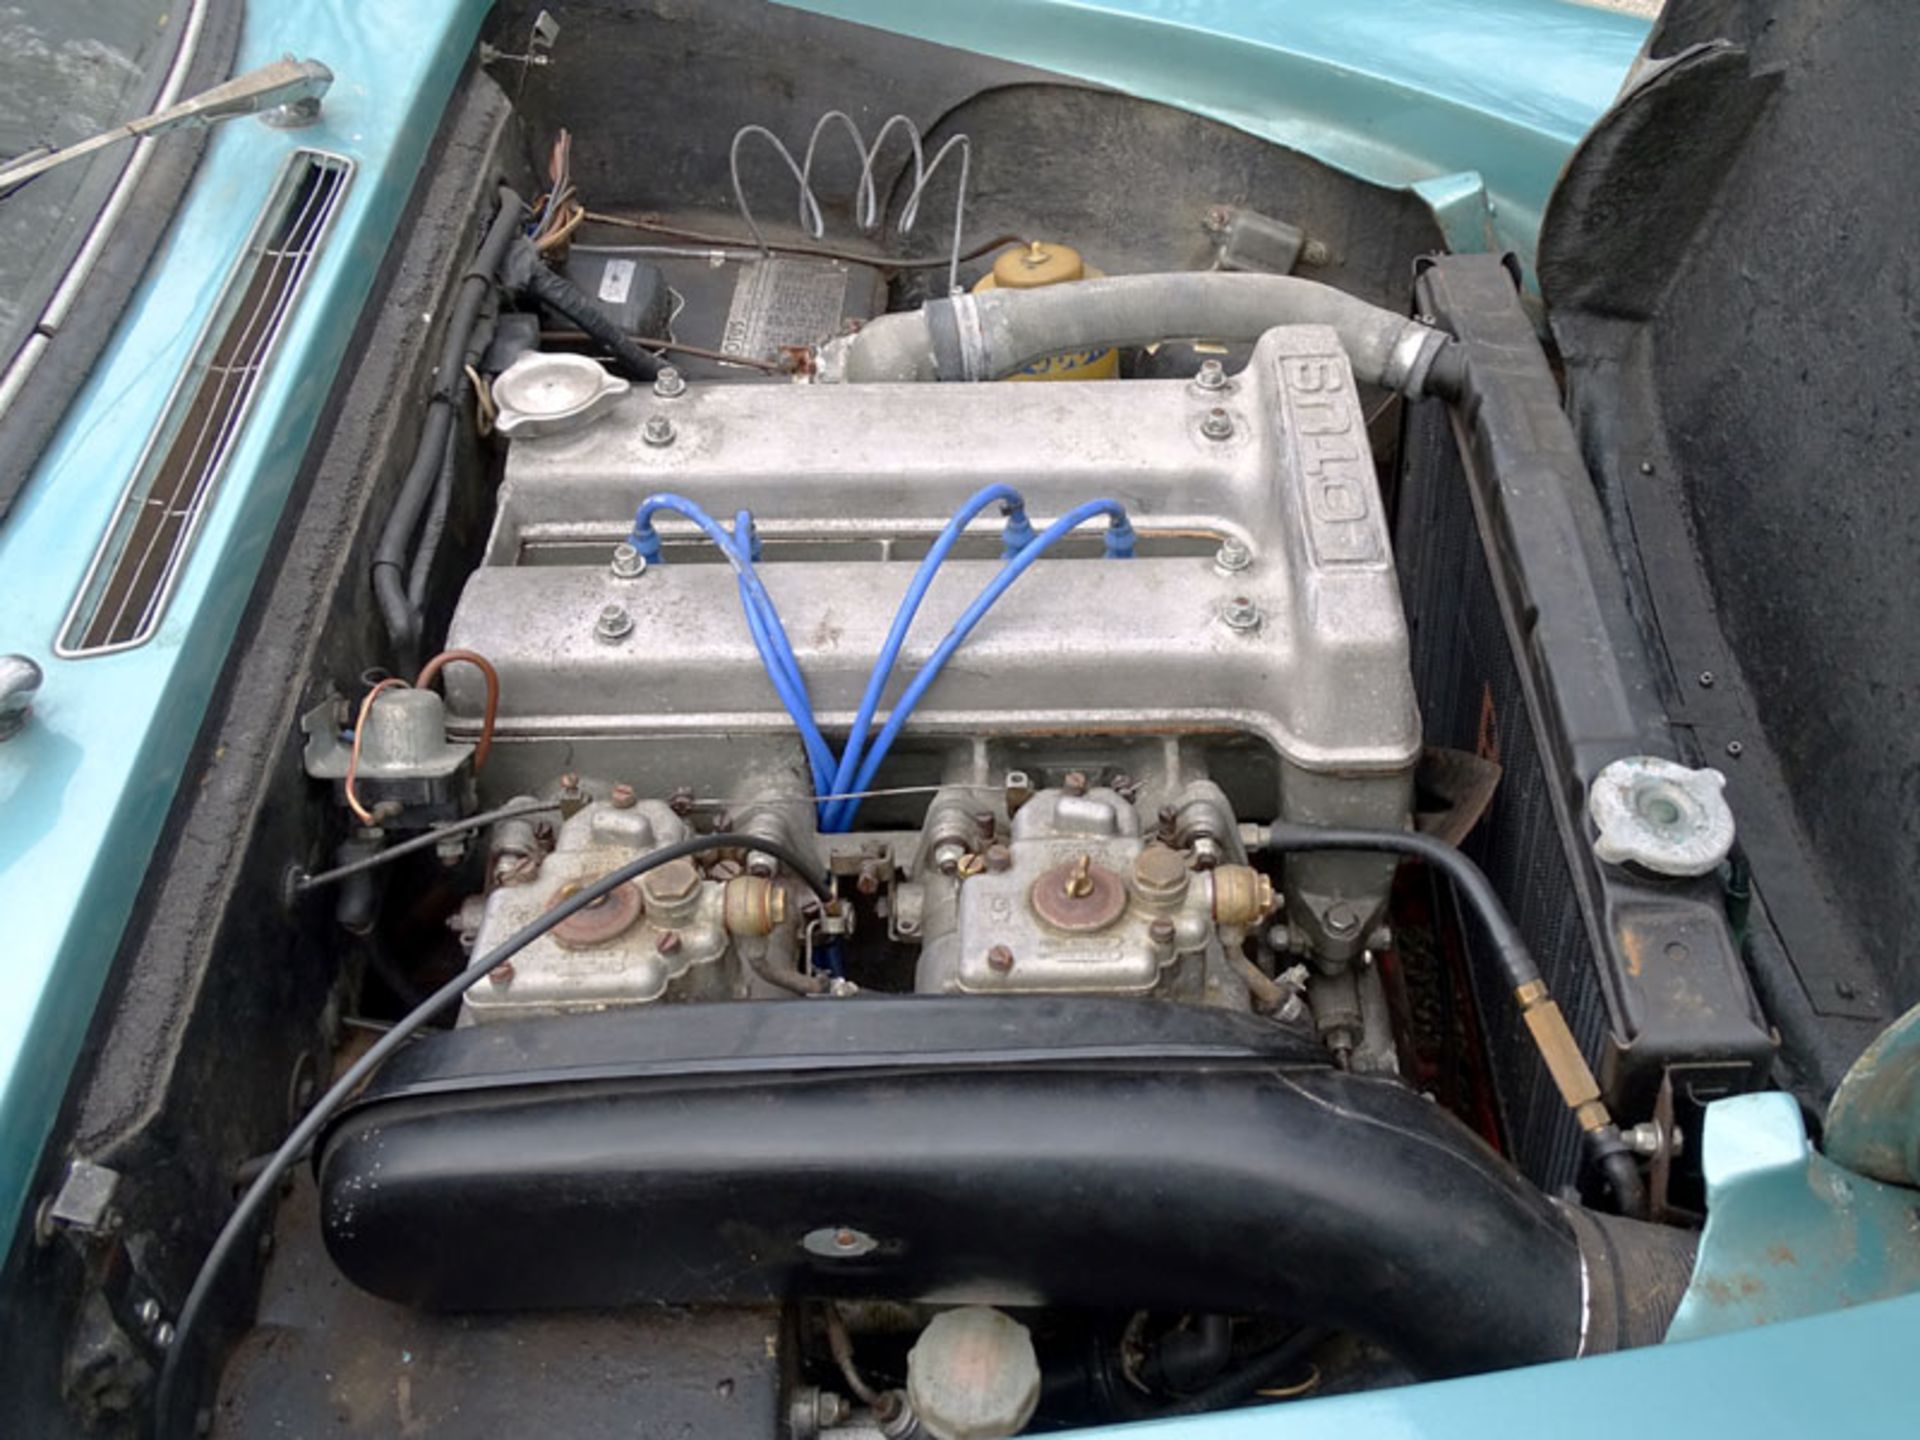 1968 Lotus Elan S3 Drophead Coupe - Image 4 of 5